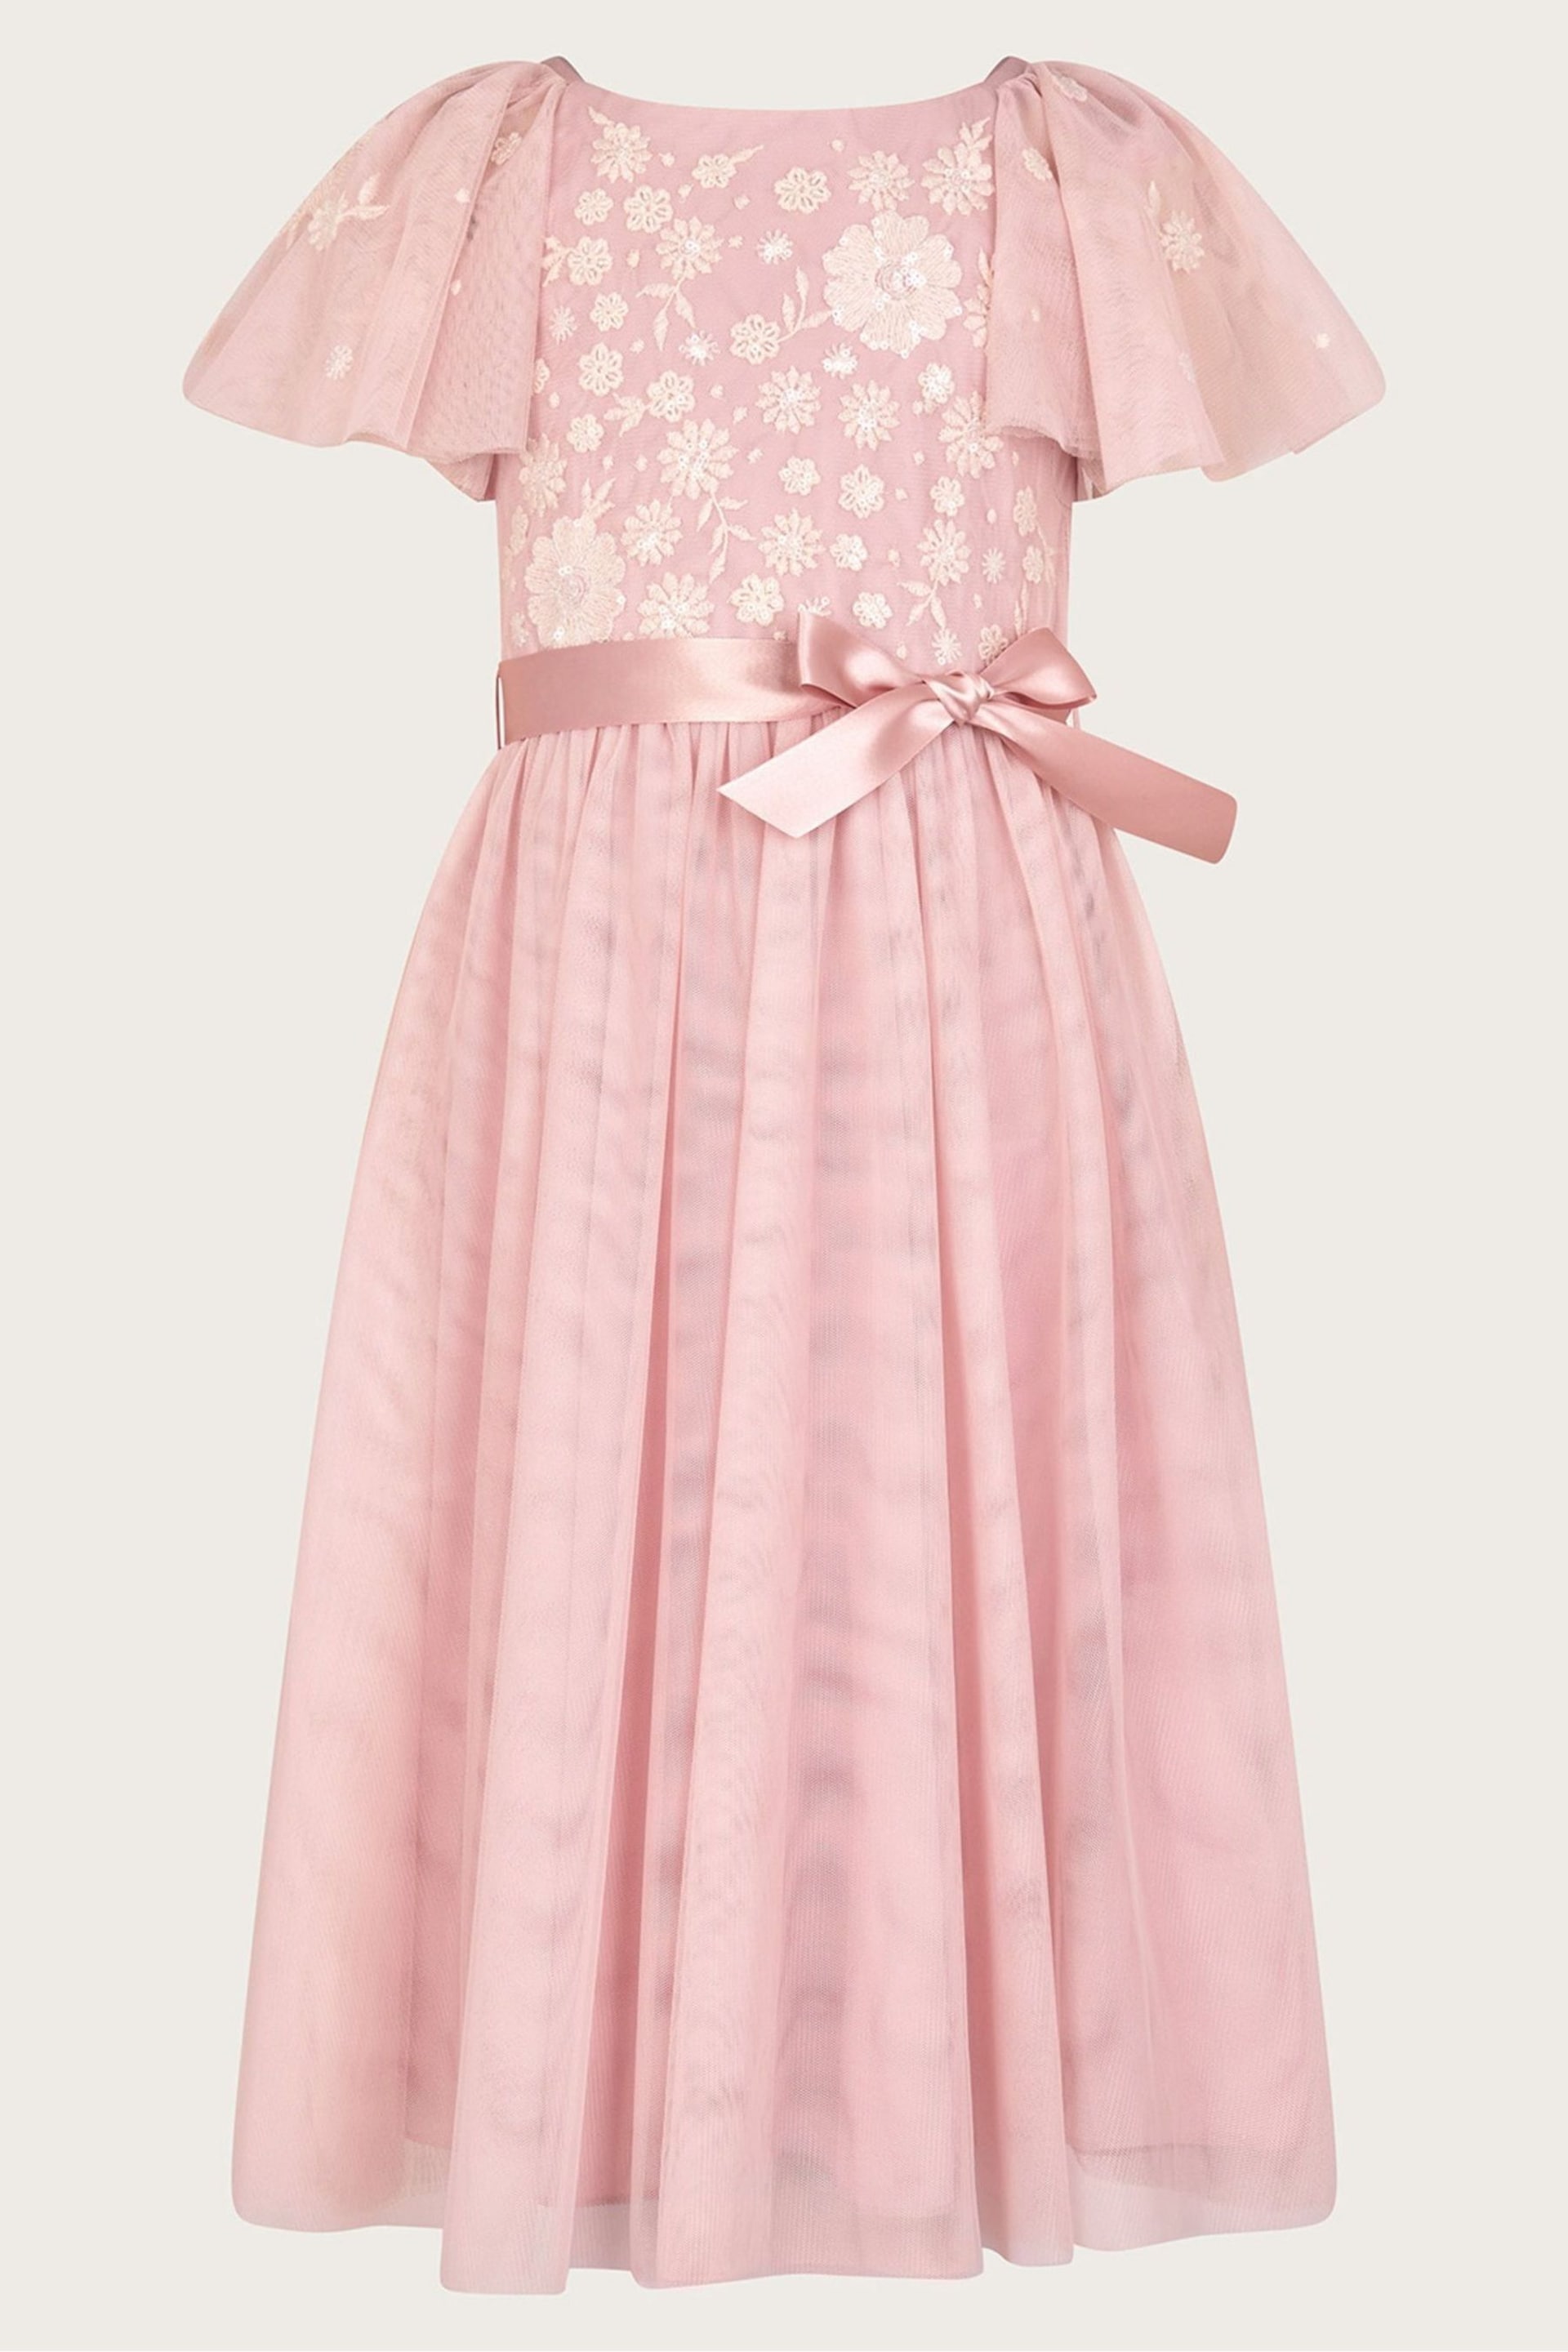 Monsoon Pink Giselle Embellished Floral Dress - Image 1 of 3